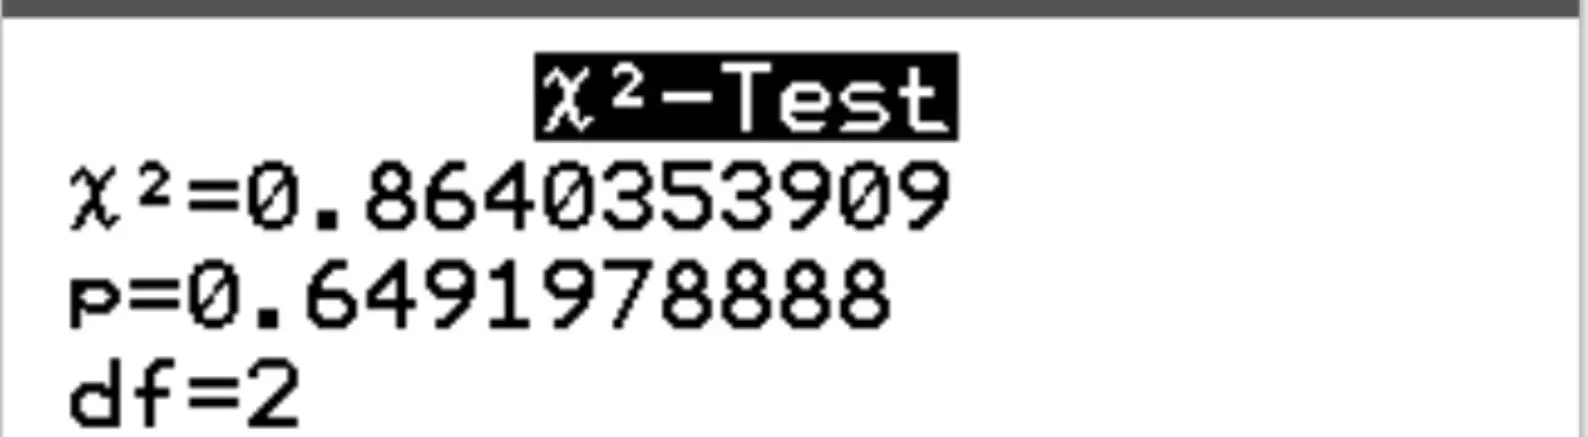 Sortie du test d'indépendance du Chi carré sur une calculatrice TI-84